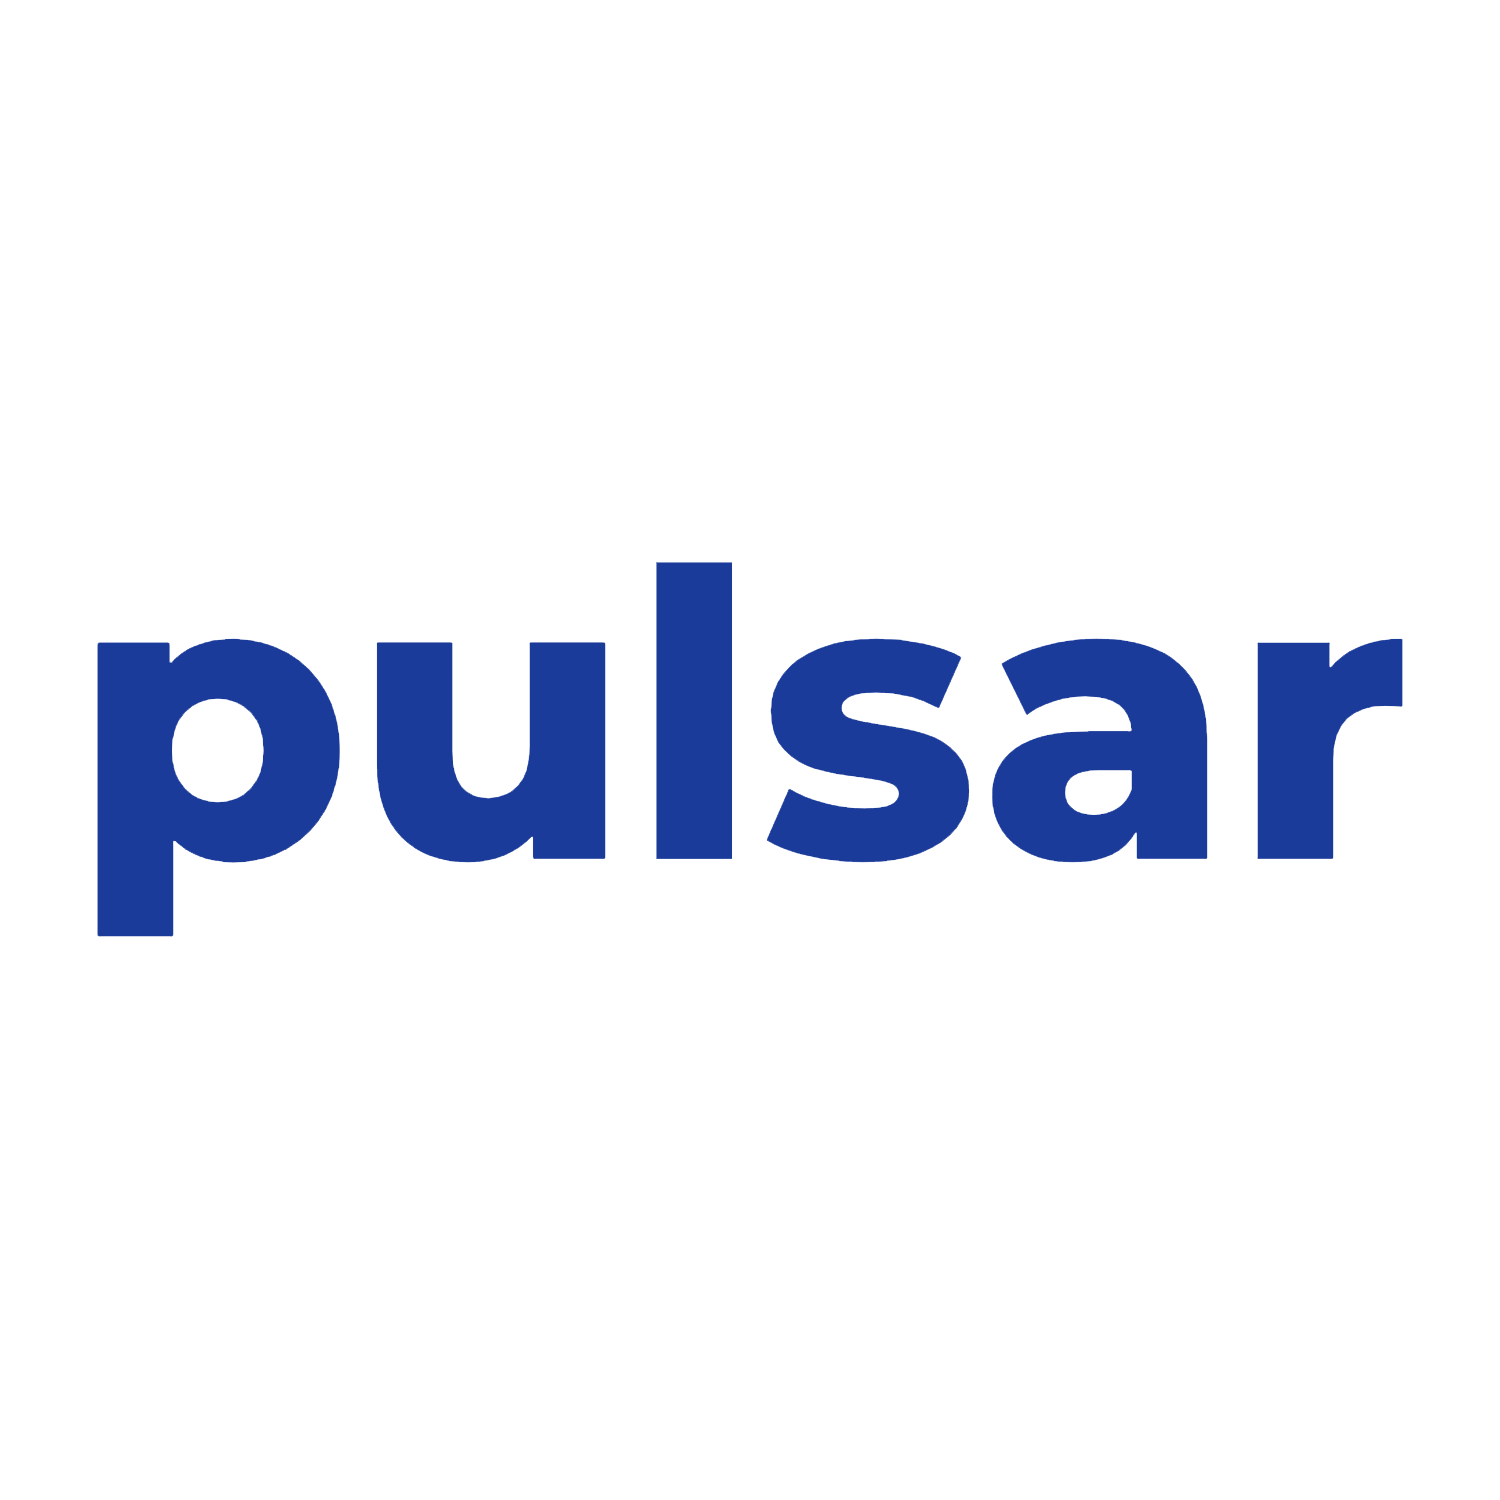 Pulsar Media